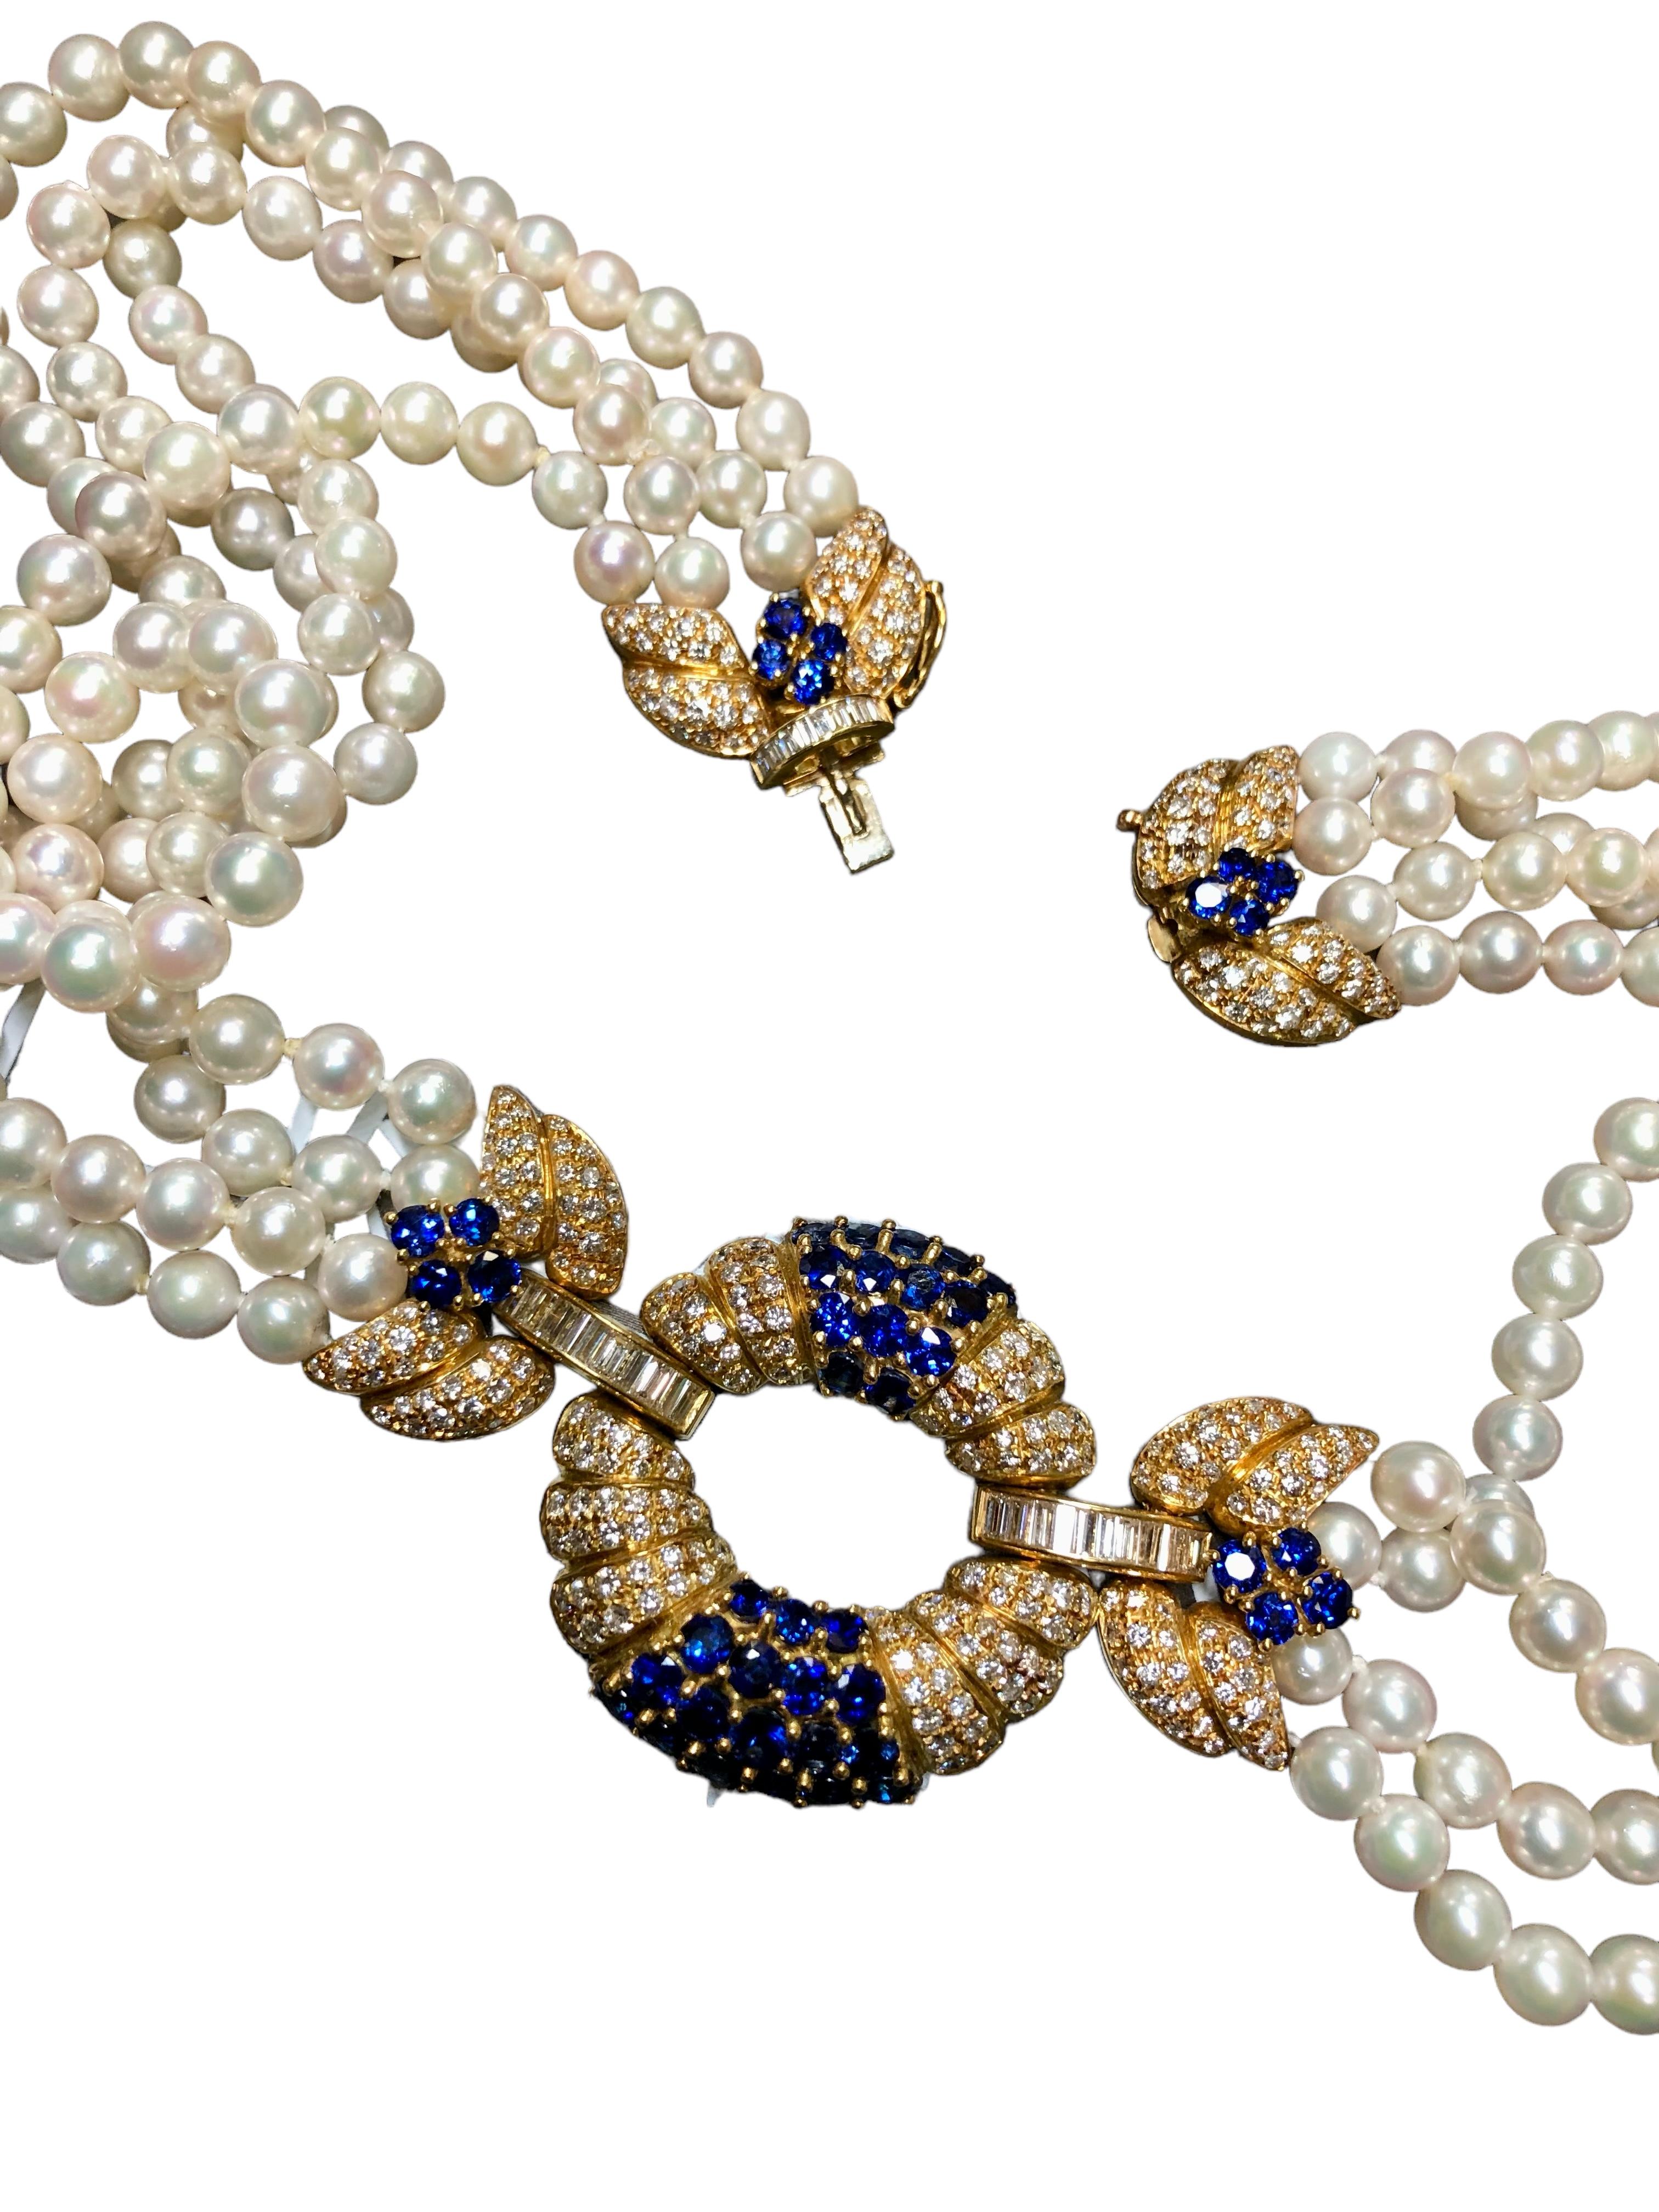 Round Cut Estate AIMETTI 18K Diamond Sapphire Pearl Italian Necklace 20.10cttw 17.25” For Sale